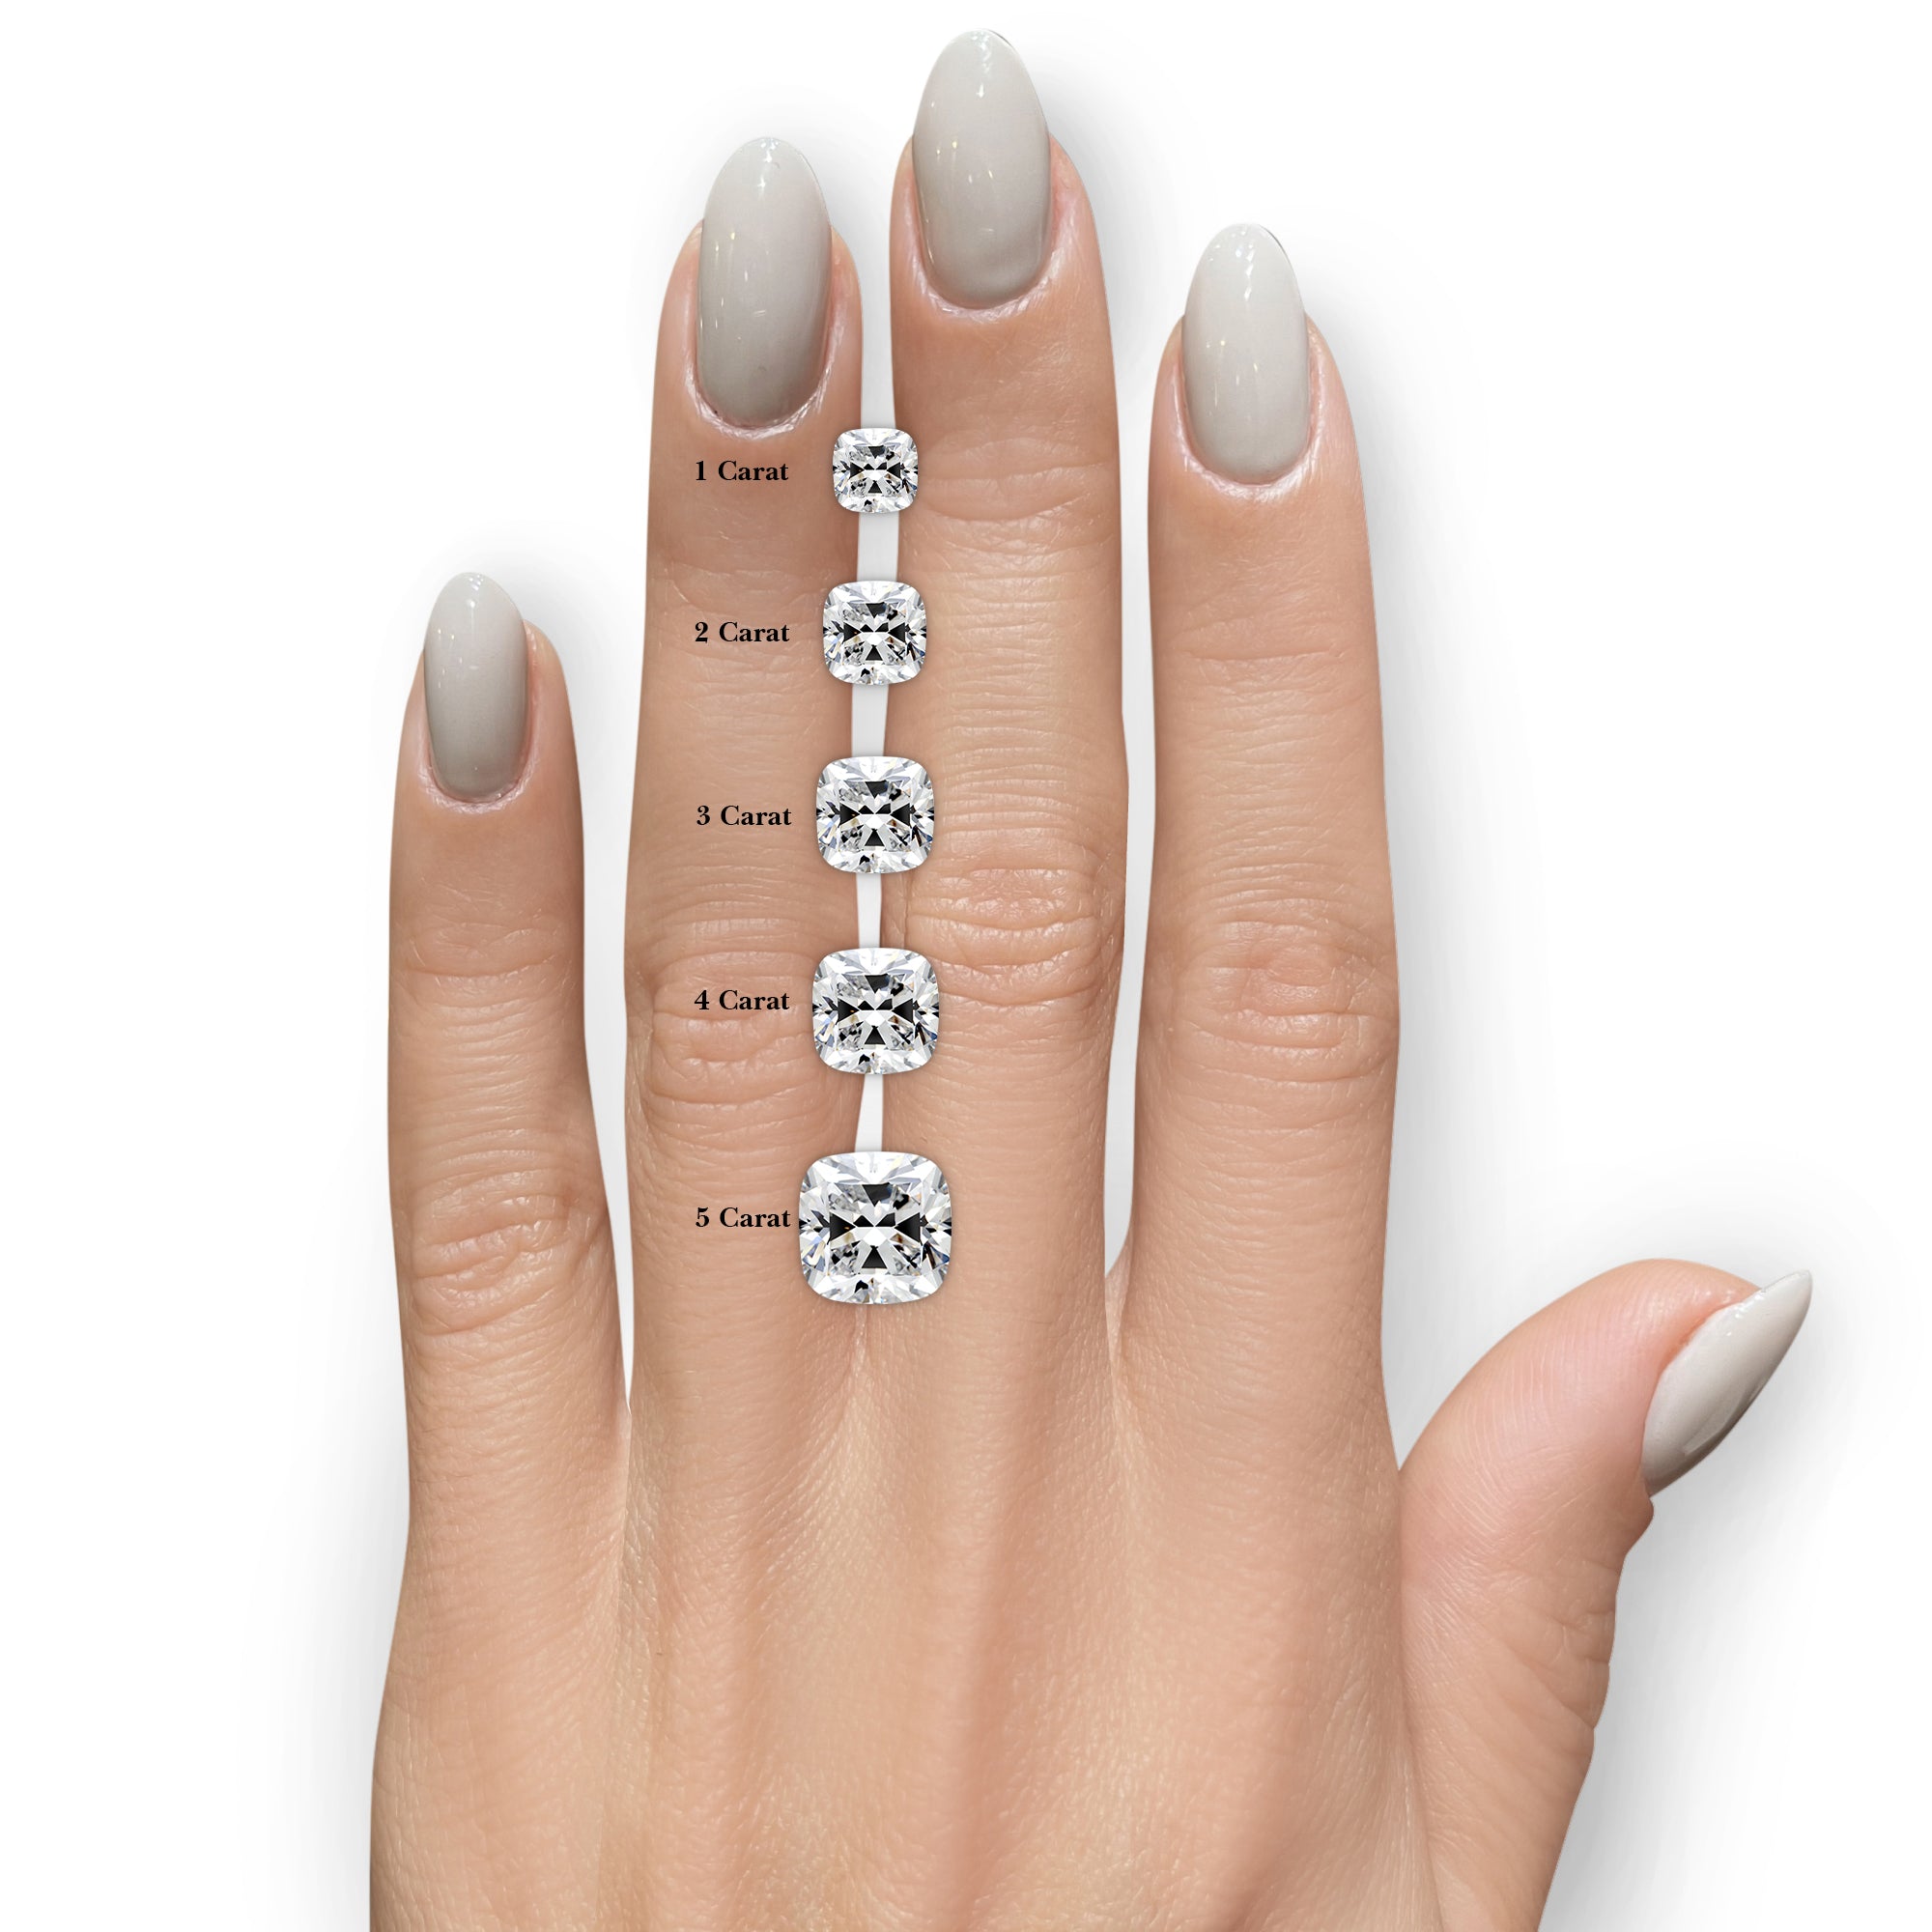 Beatriz Diamond Engagement Ring -18K White Gold